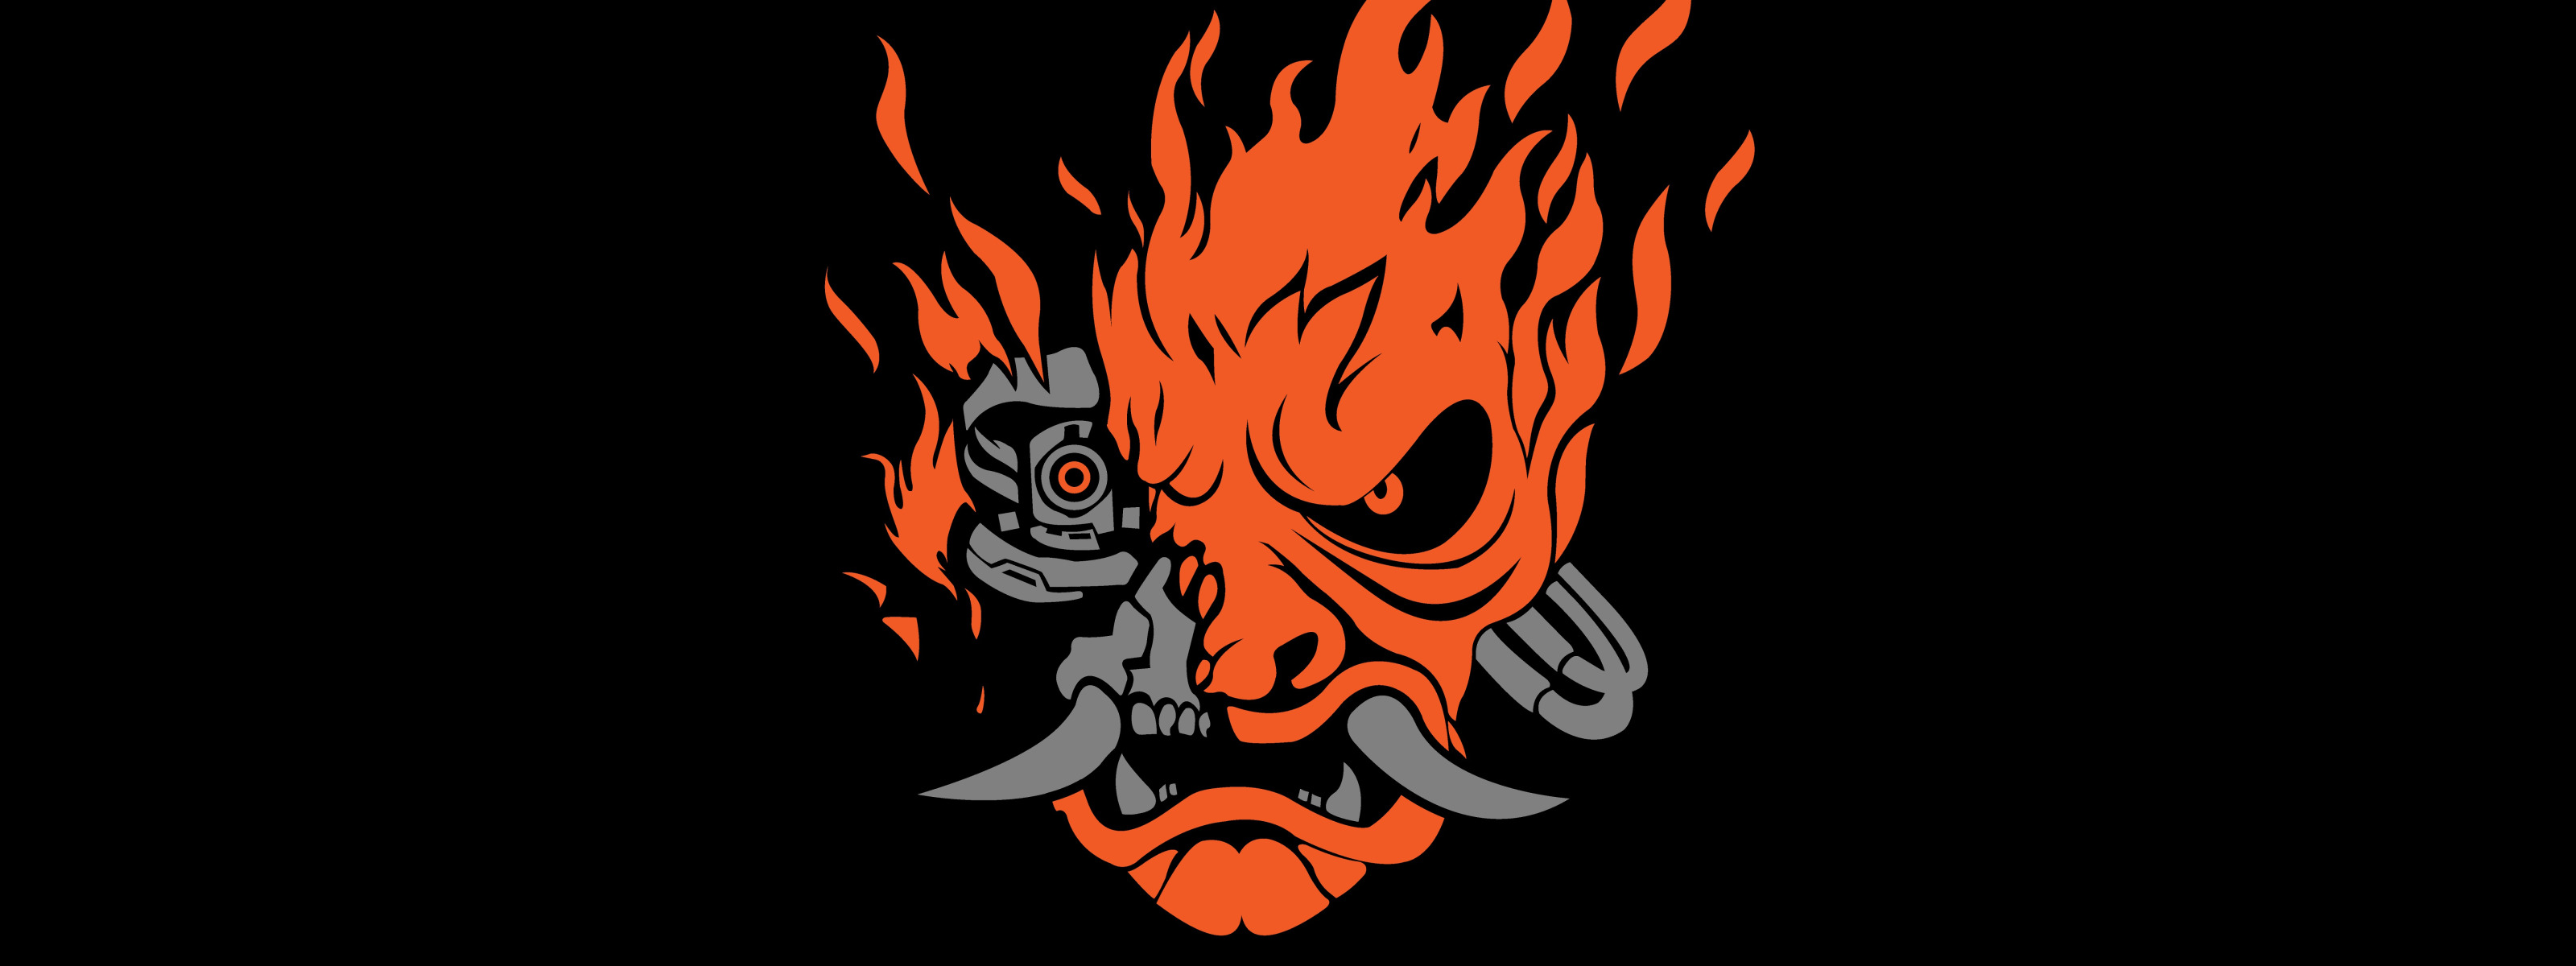 Samurai логотип cyberpunk фото 92